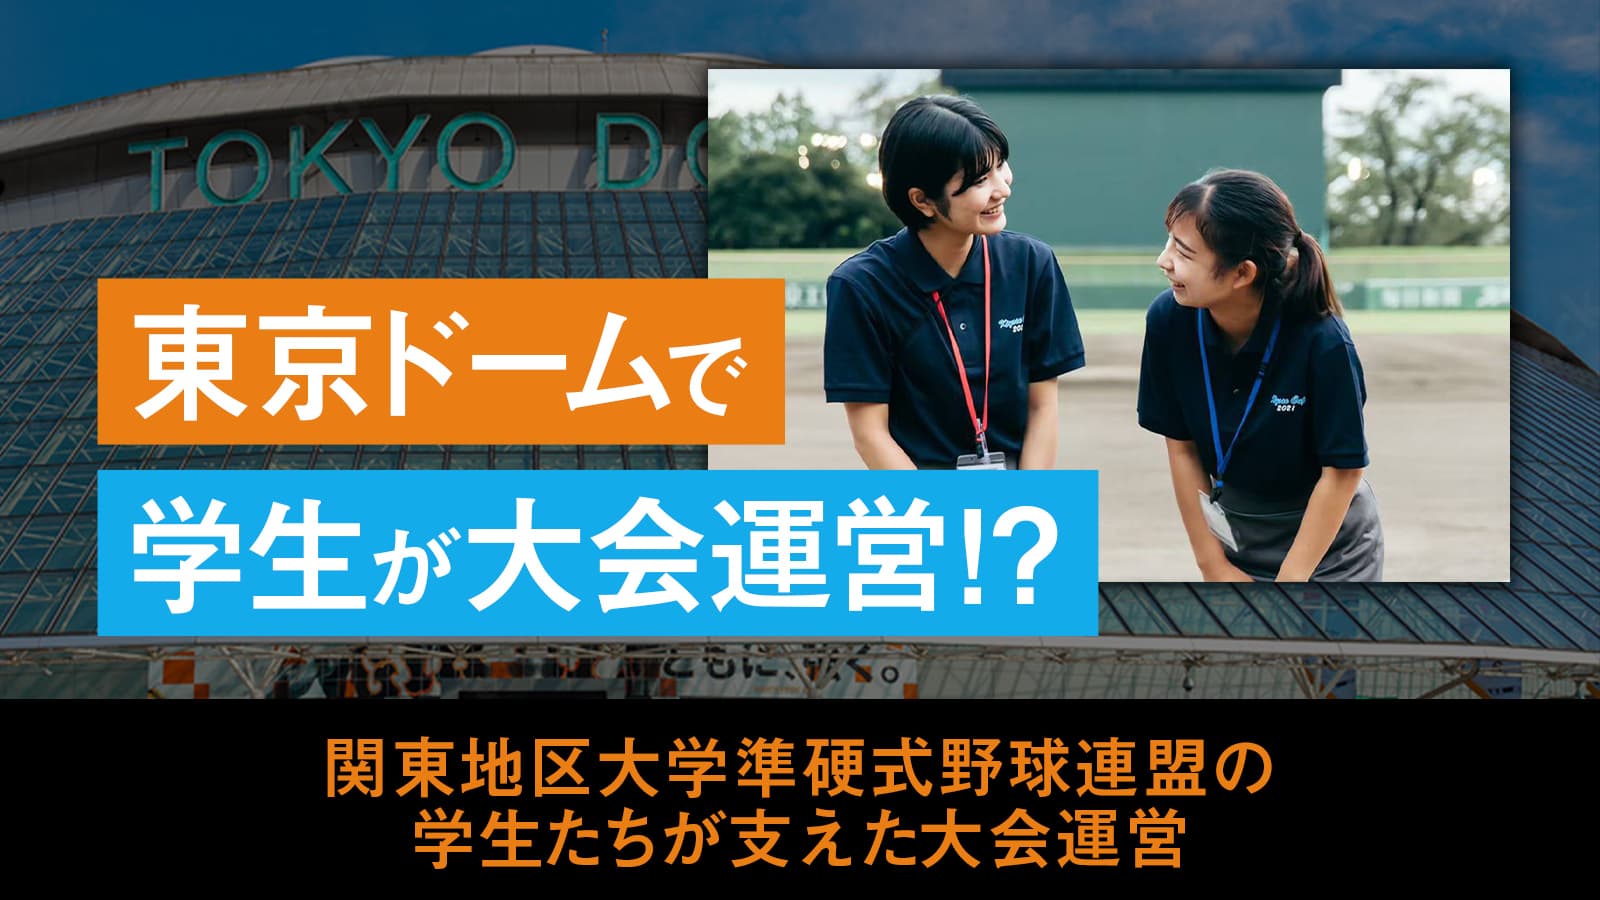 史上初となる東京ドームでの熱戦の裏で、大会運営を支える関東地区大学準硬式野球連盟の学生たち